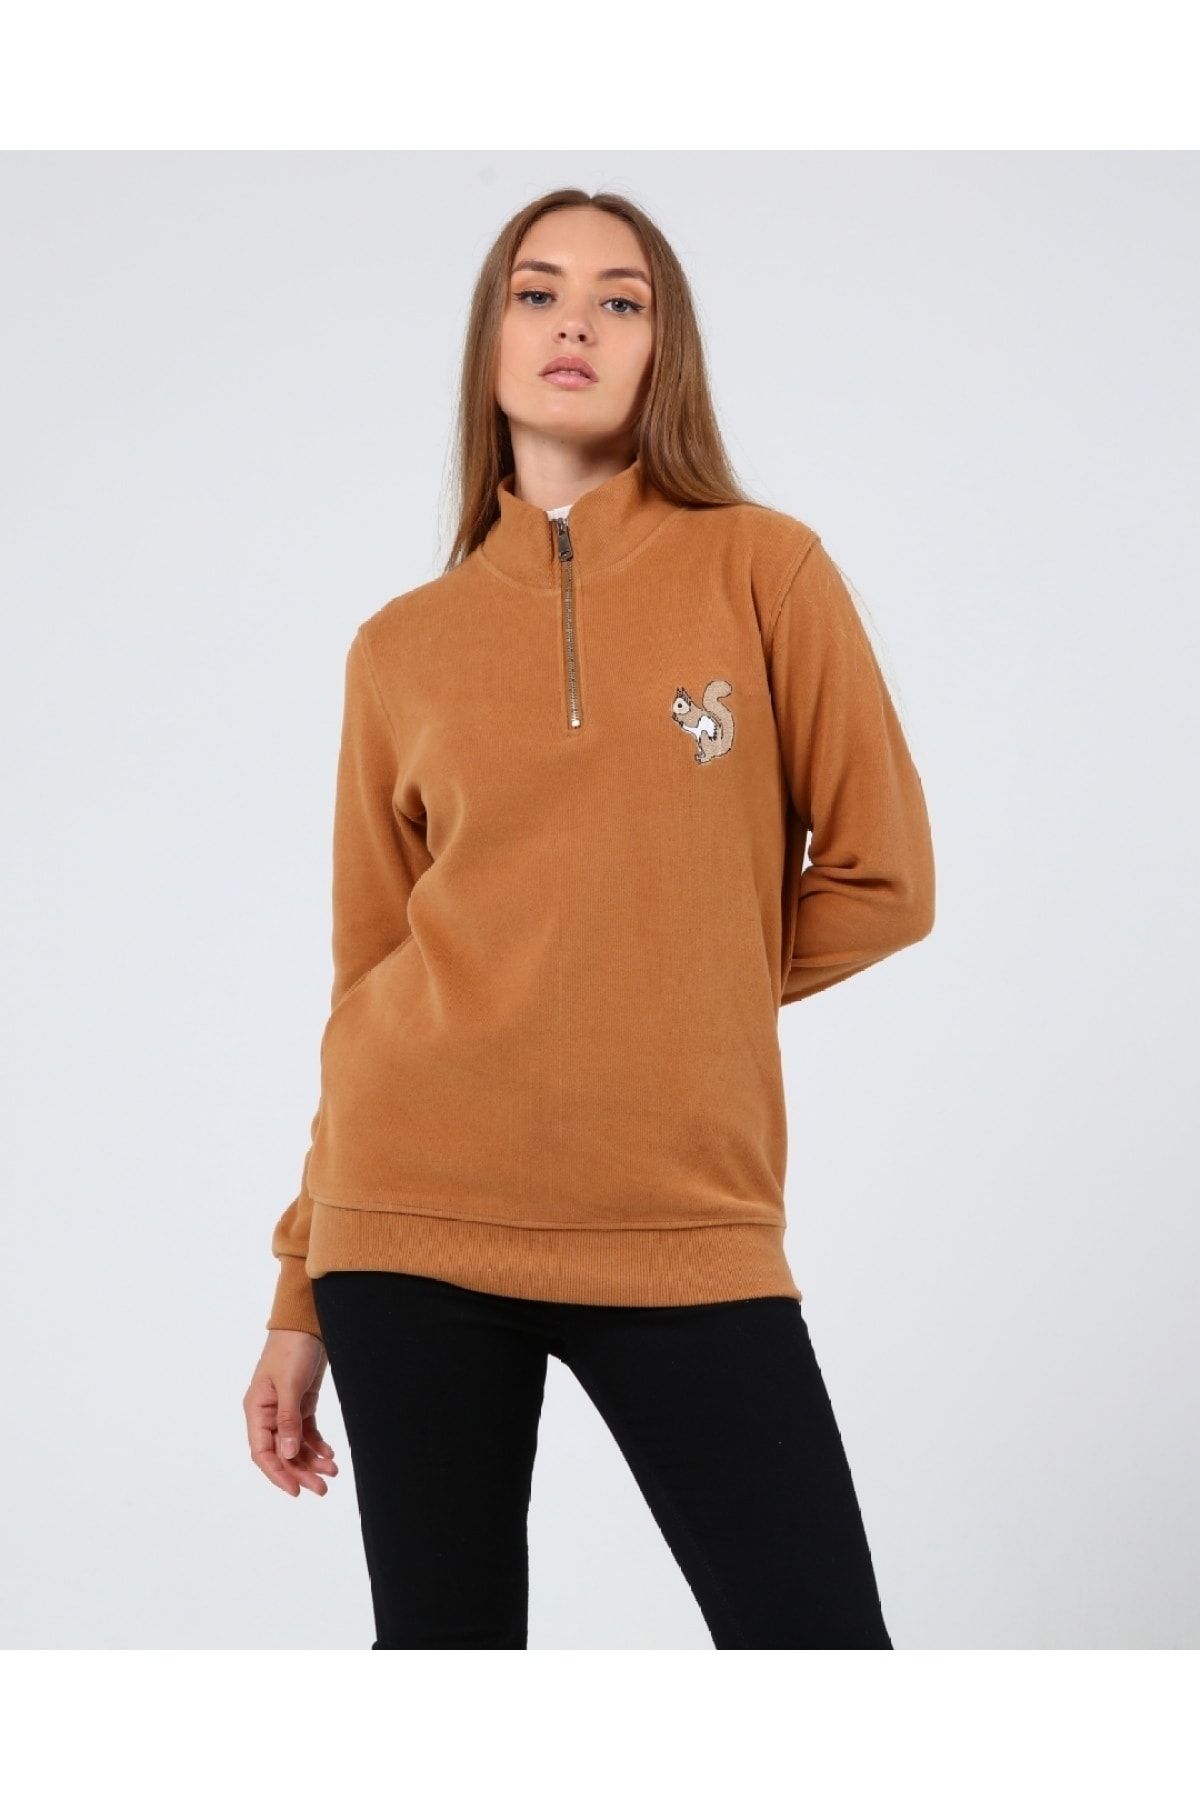 GENIUS STORE Store Kadın Selanik Outdoor Yarım Fermuarlı Sweatshirt Nakış Işlemeli Günlük Spor Sweatshirt